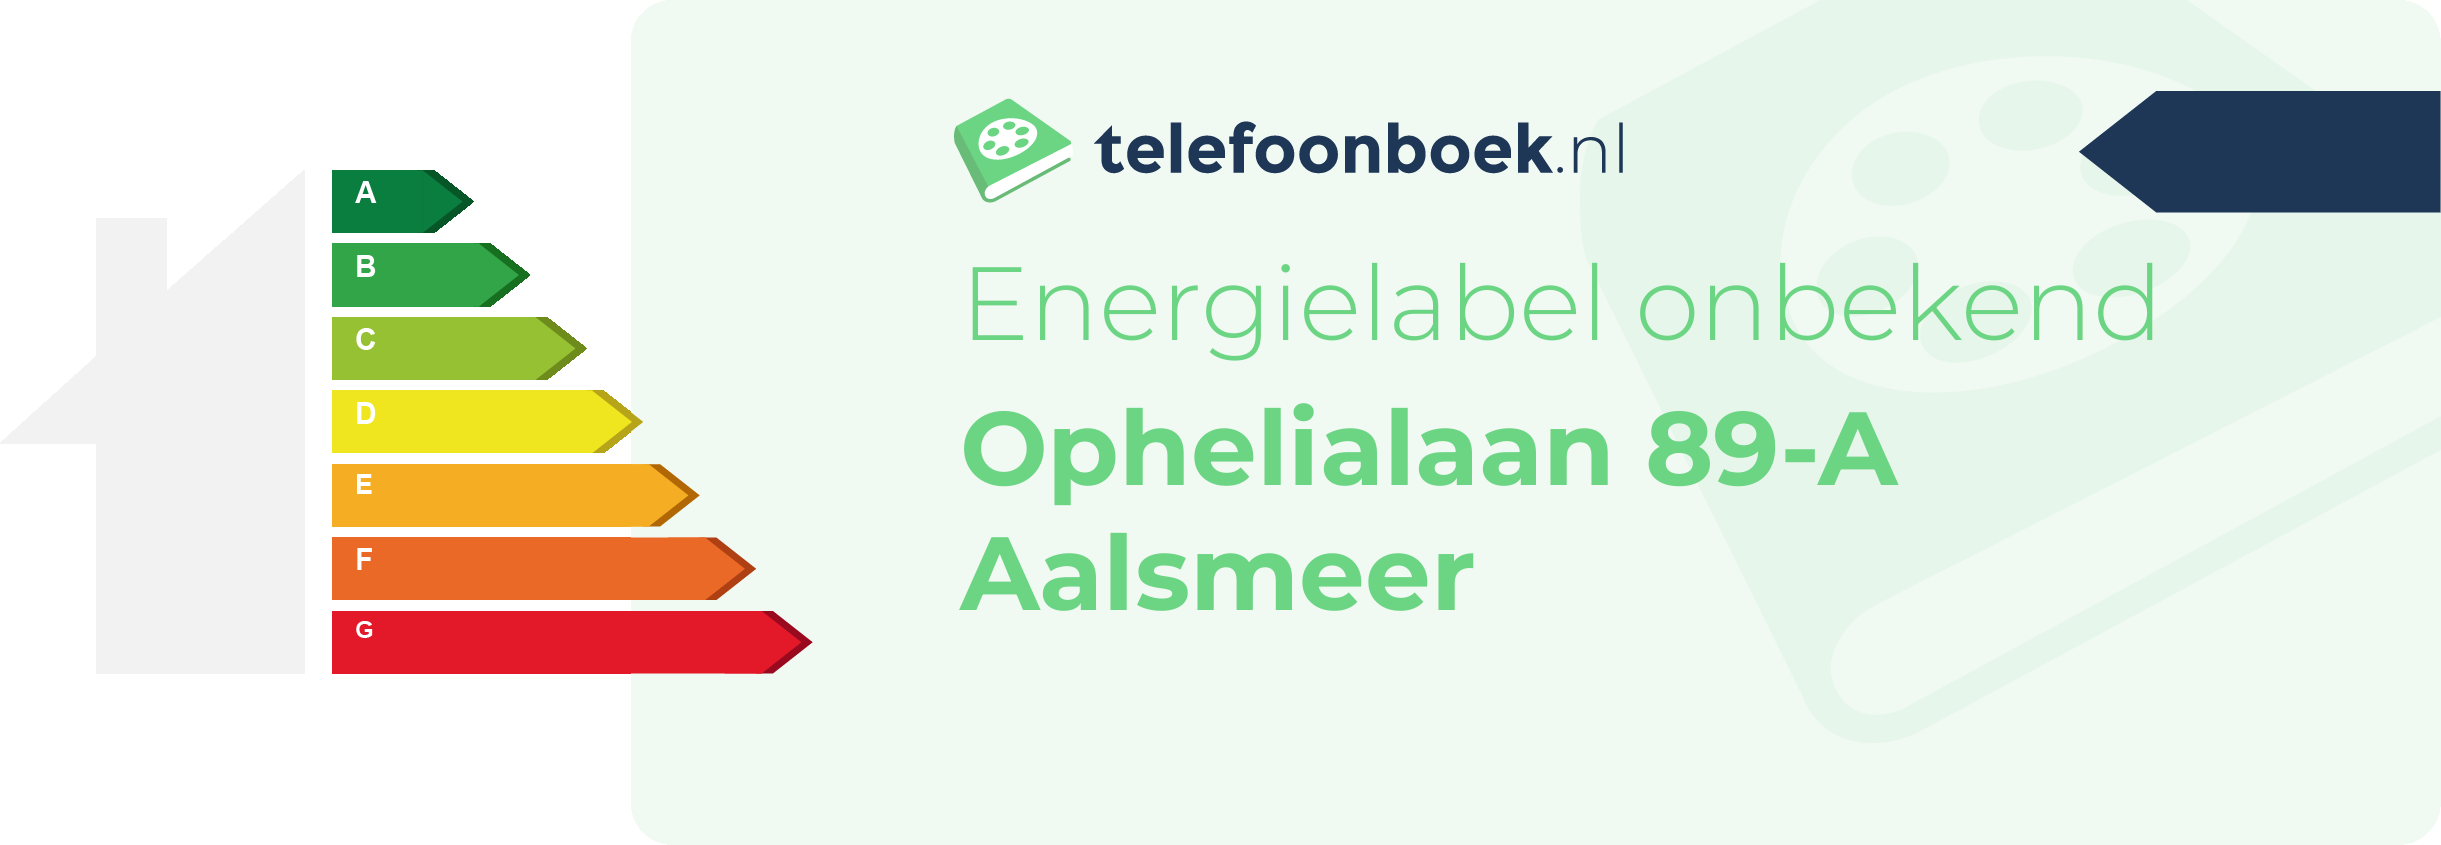 Energielabel Ophelialaan 89-A Aalsmeer